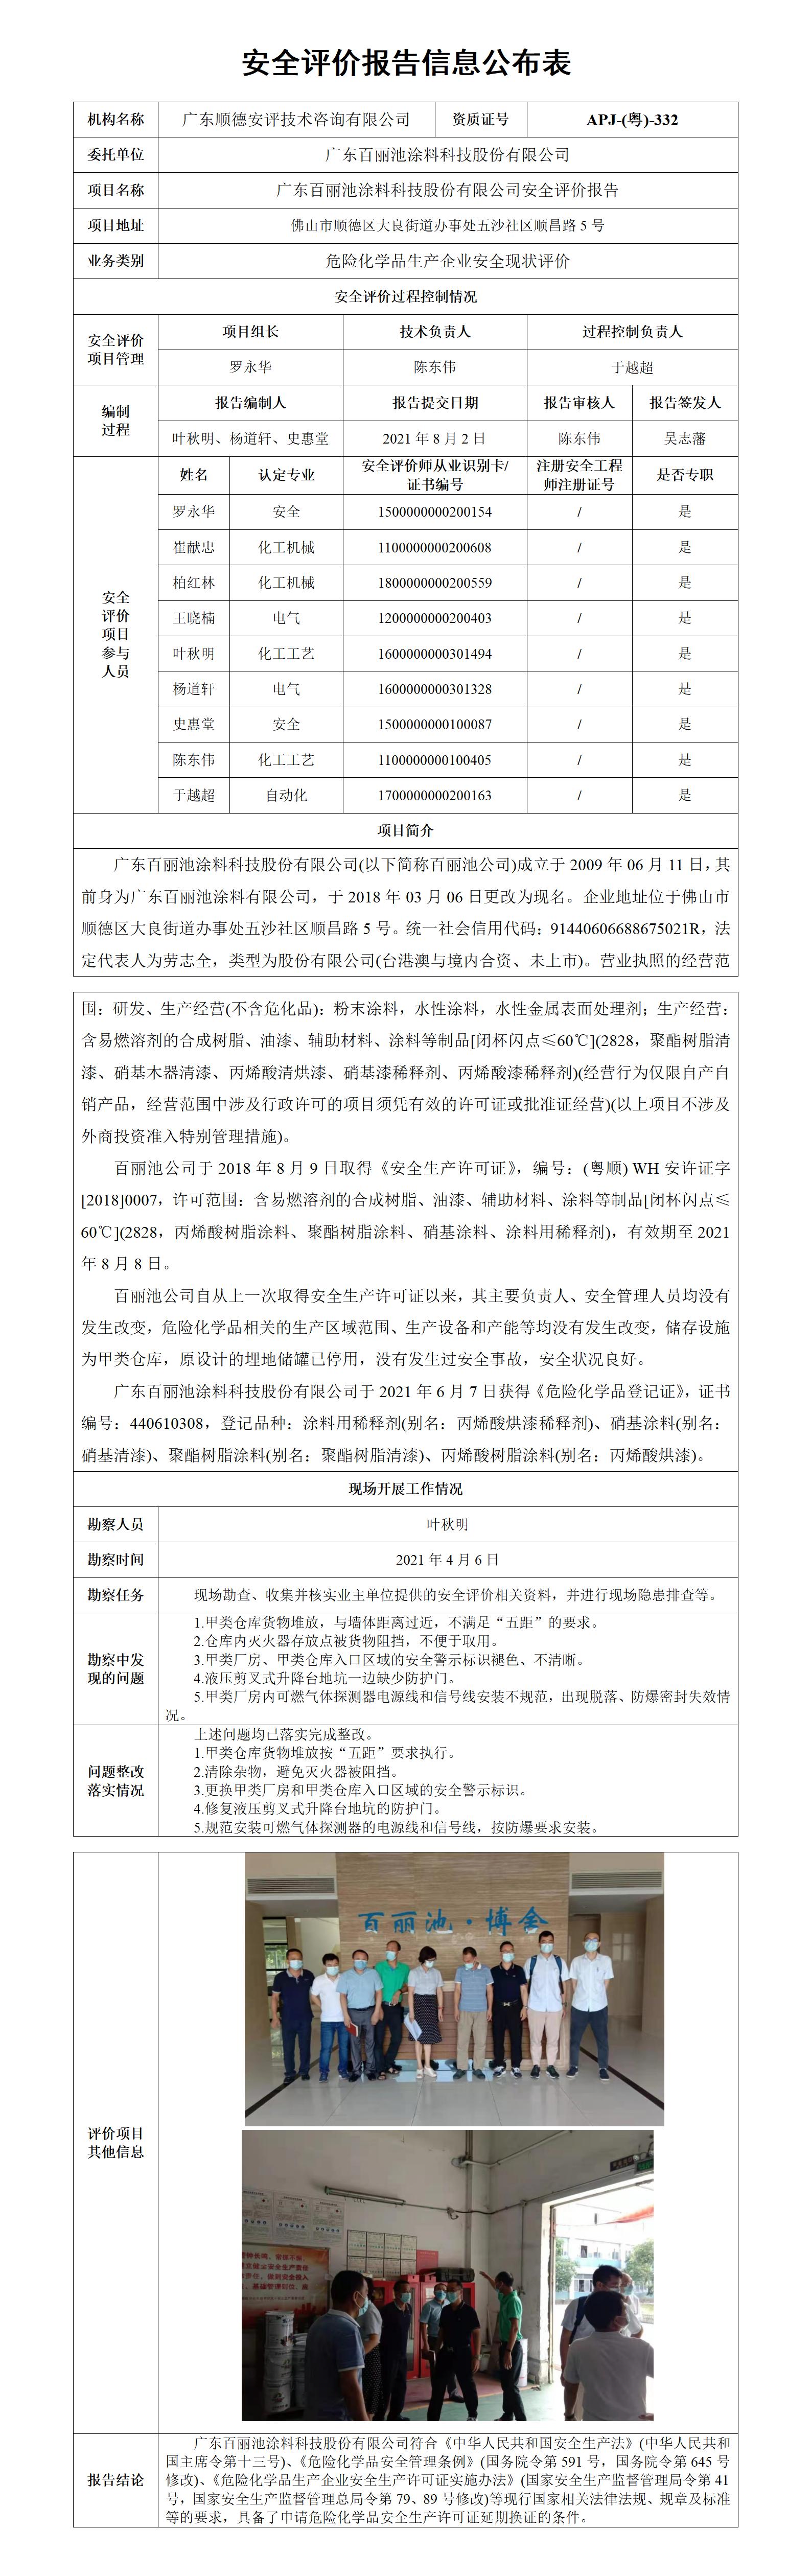 广东百丽池涂料科技股份有限公司安全评价报告2021年_01.jpg